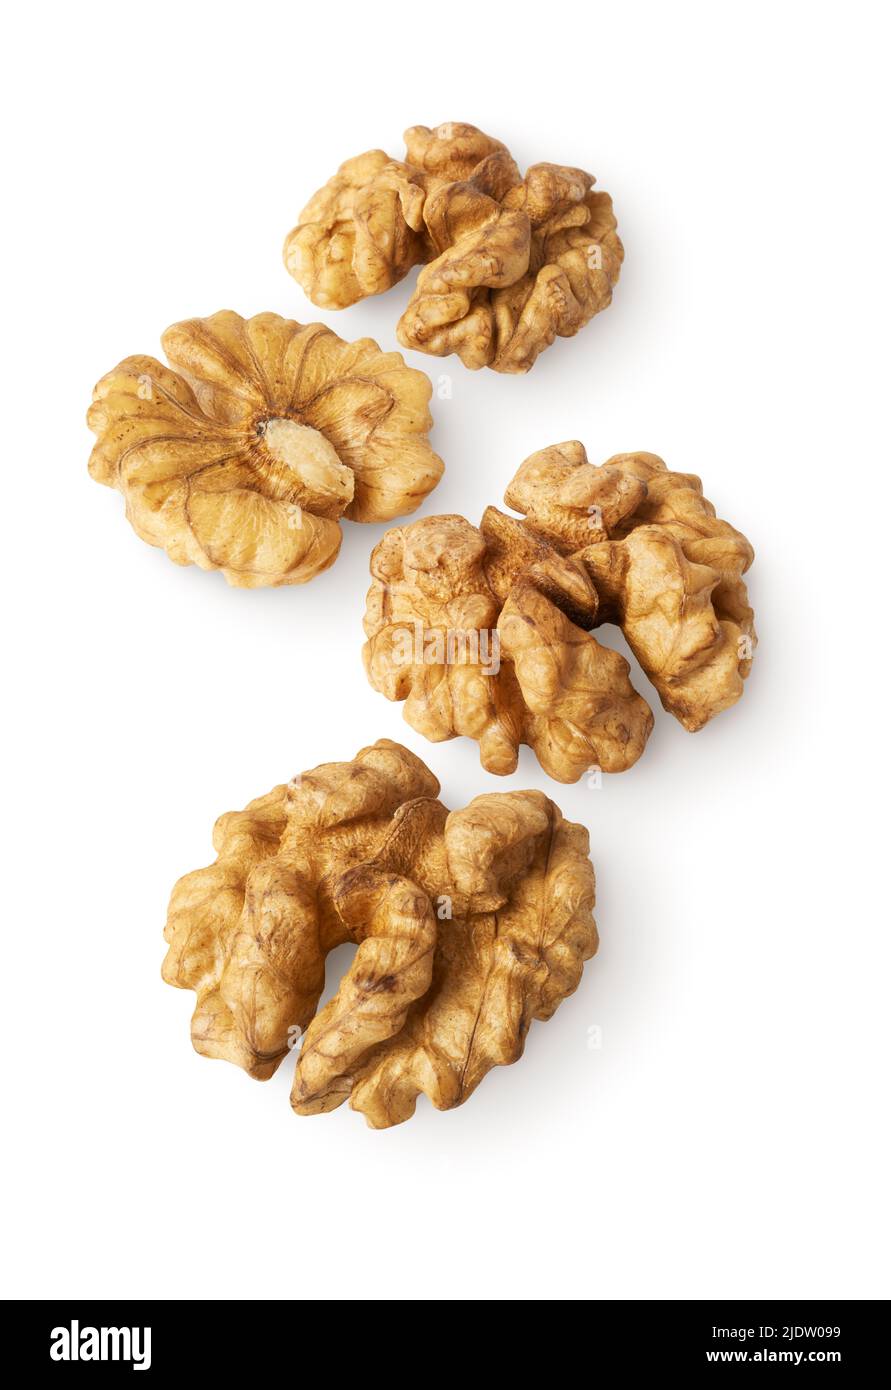 Group of fresh peeled walnuts, isolated on white background Stock Photo